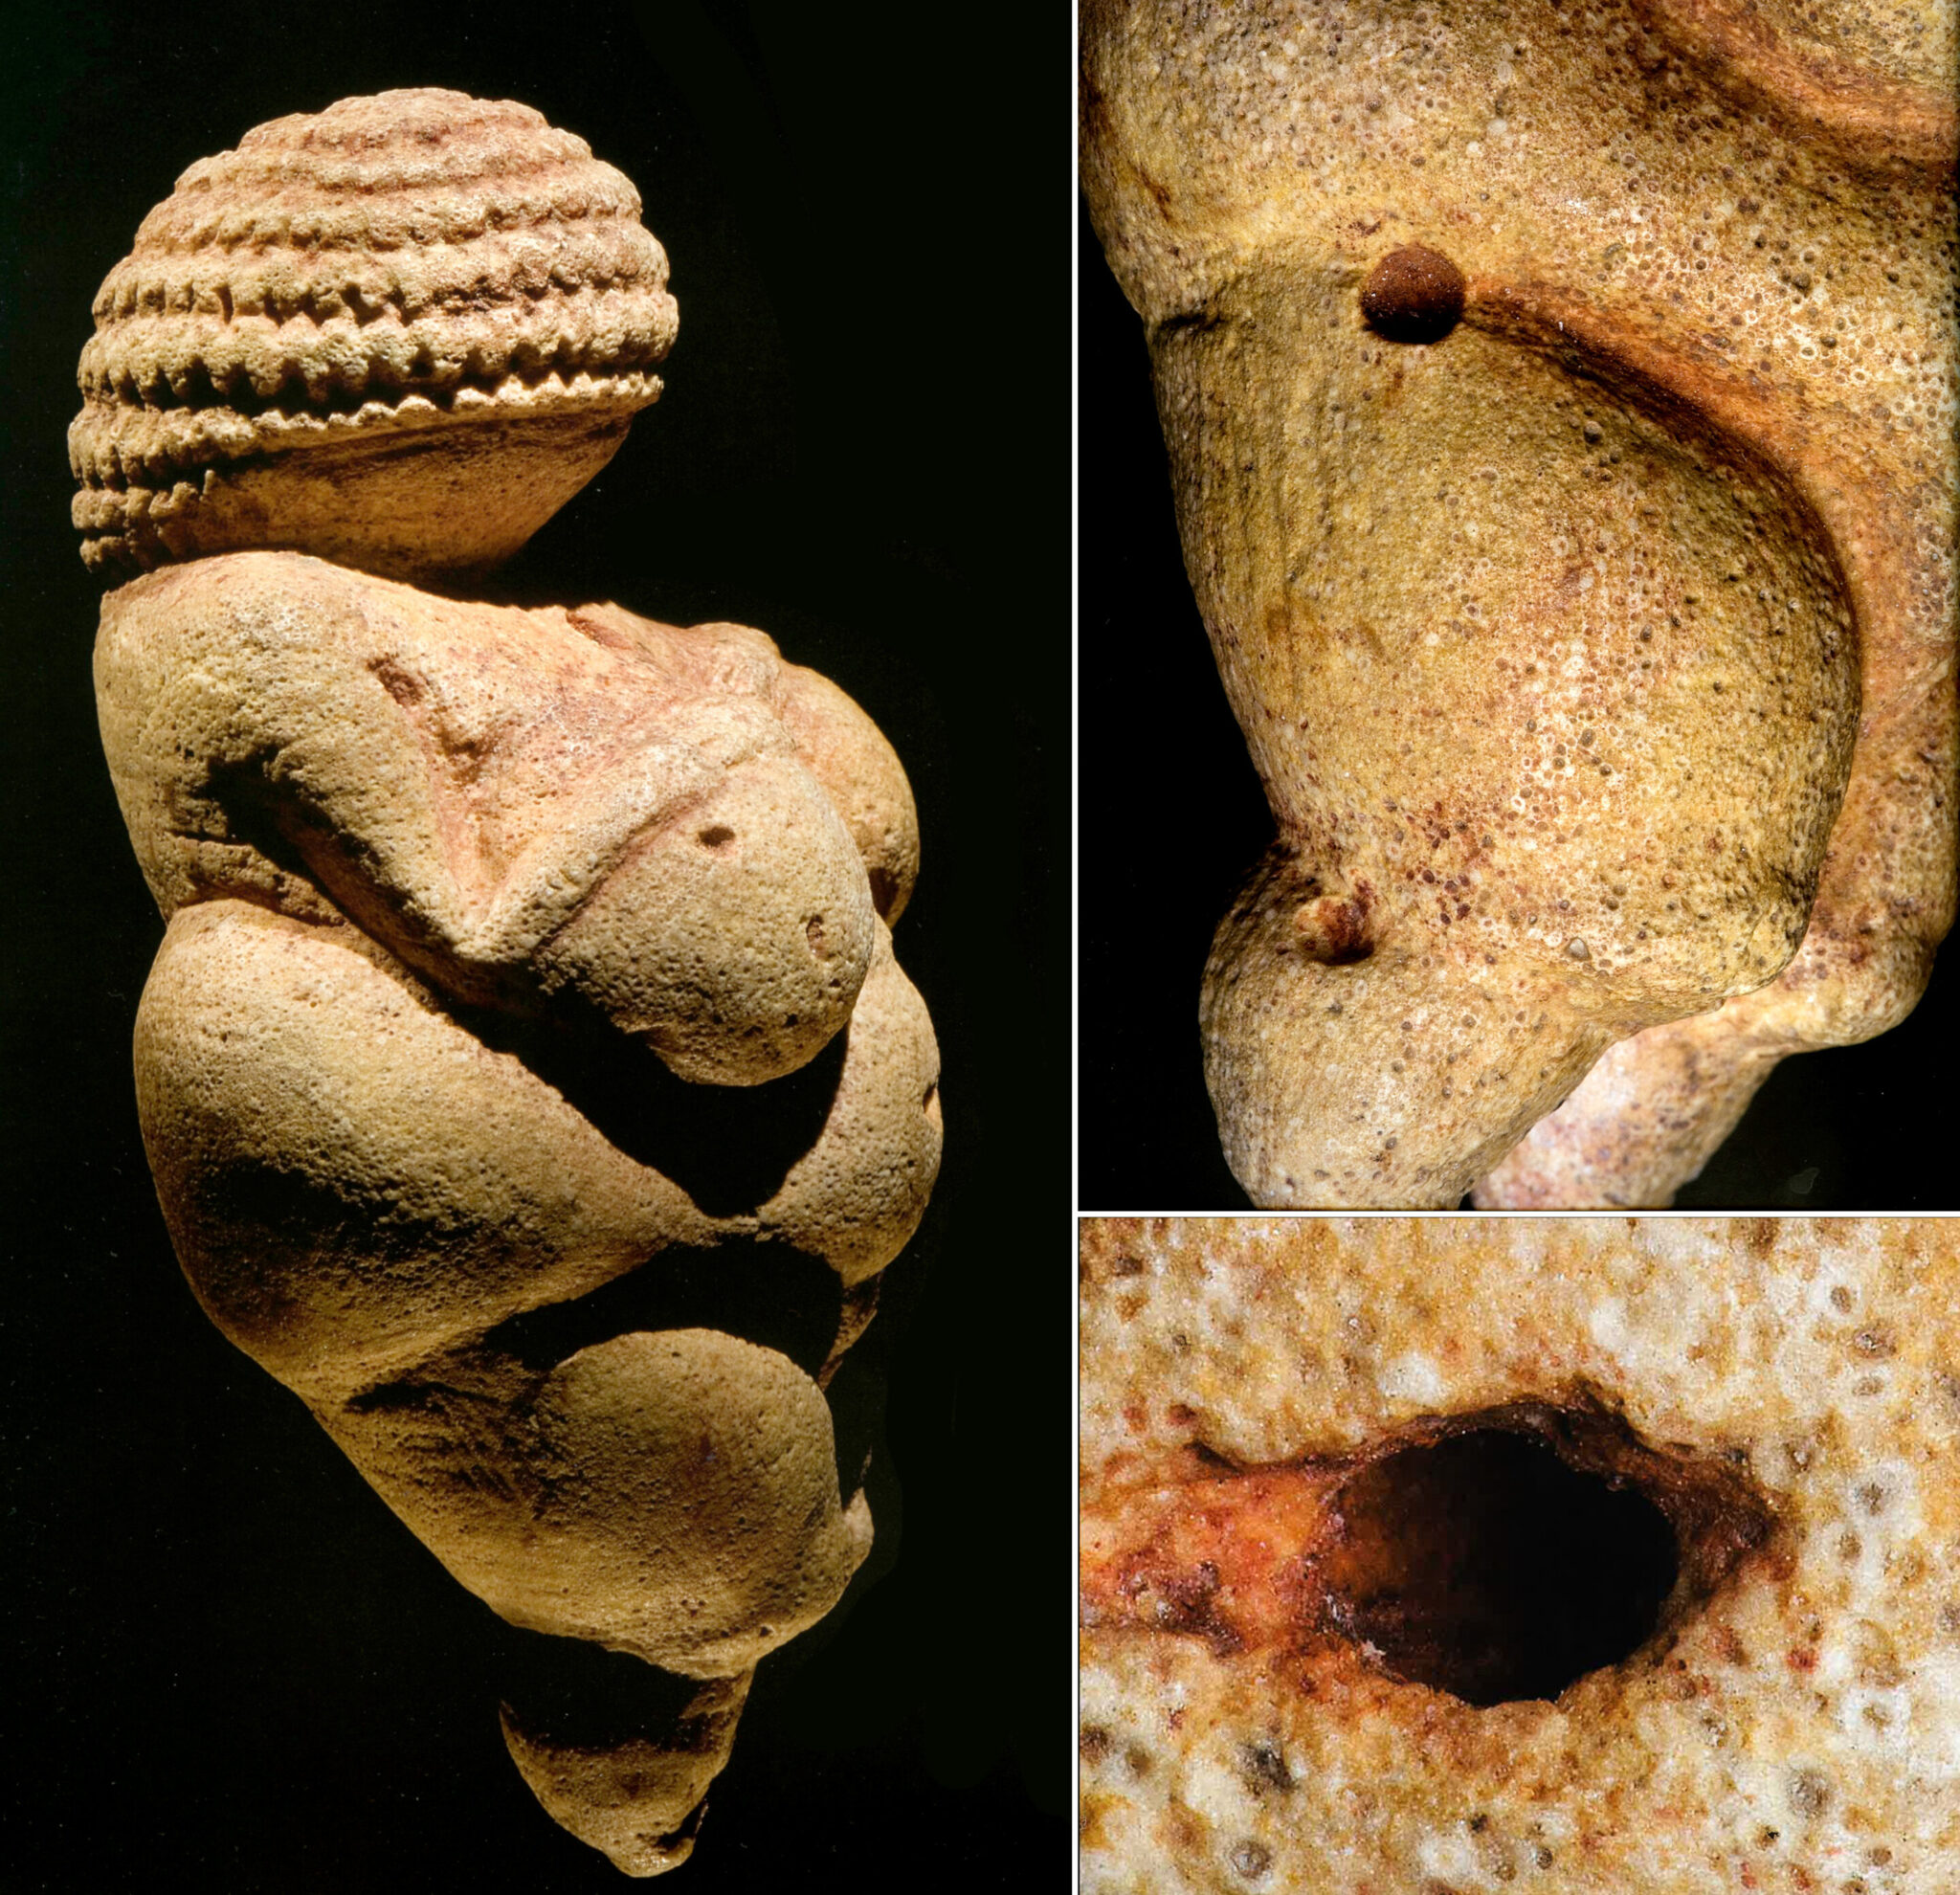 Venus of Willendorf originated in Italy